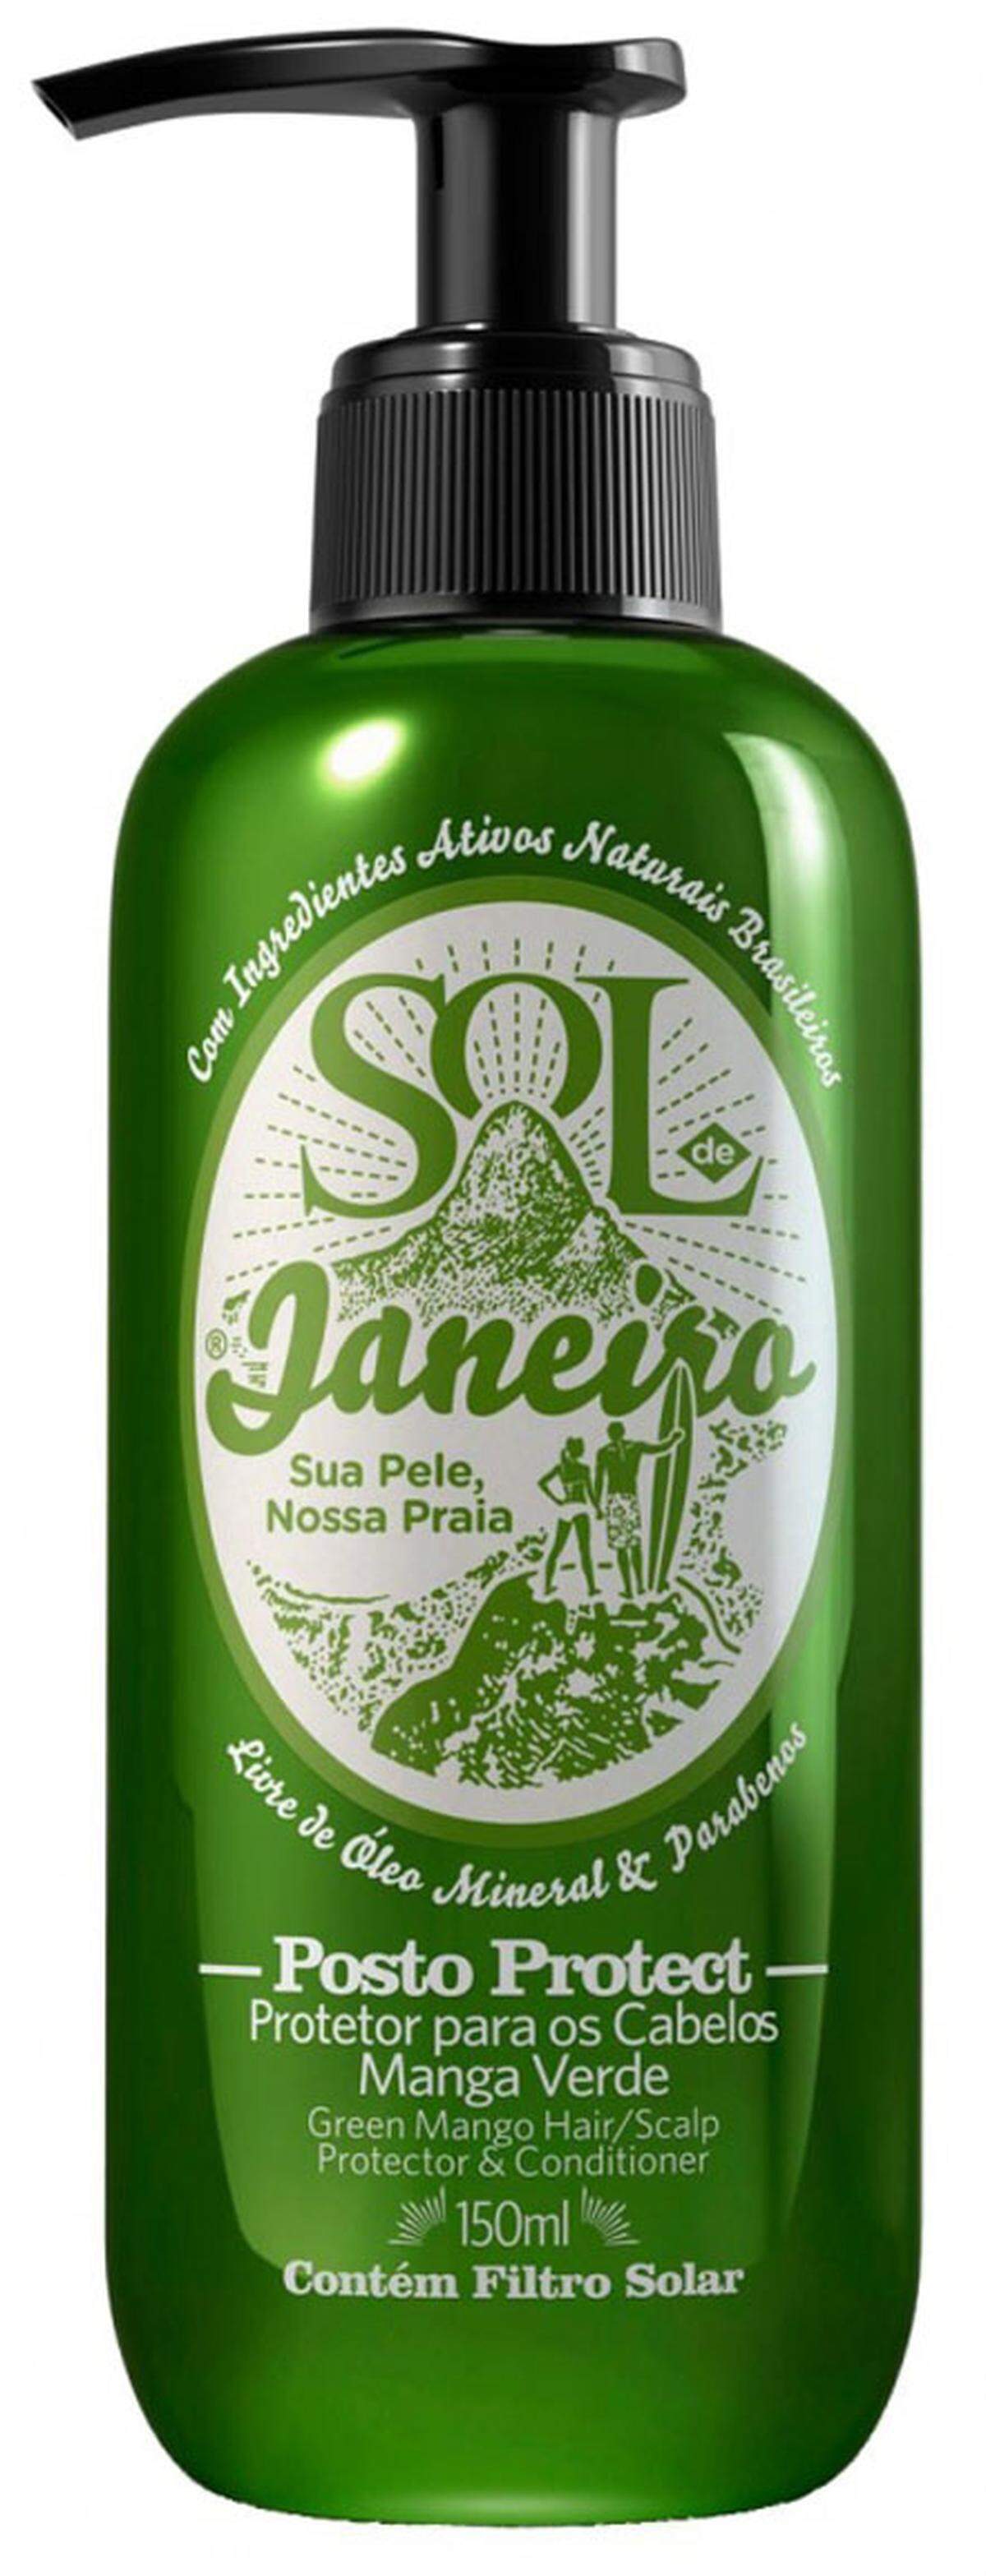 Sonnenschutz und Conditioner mit Grüner Mango bietet Sol De Janeiro. Damit wird das Haar vor Sonnenschäden geschützt und trocknet nicht aus. Preis: 23 Euro/150 ml.